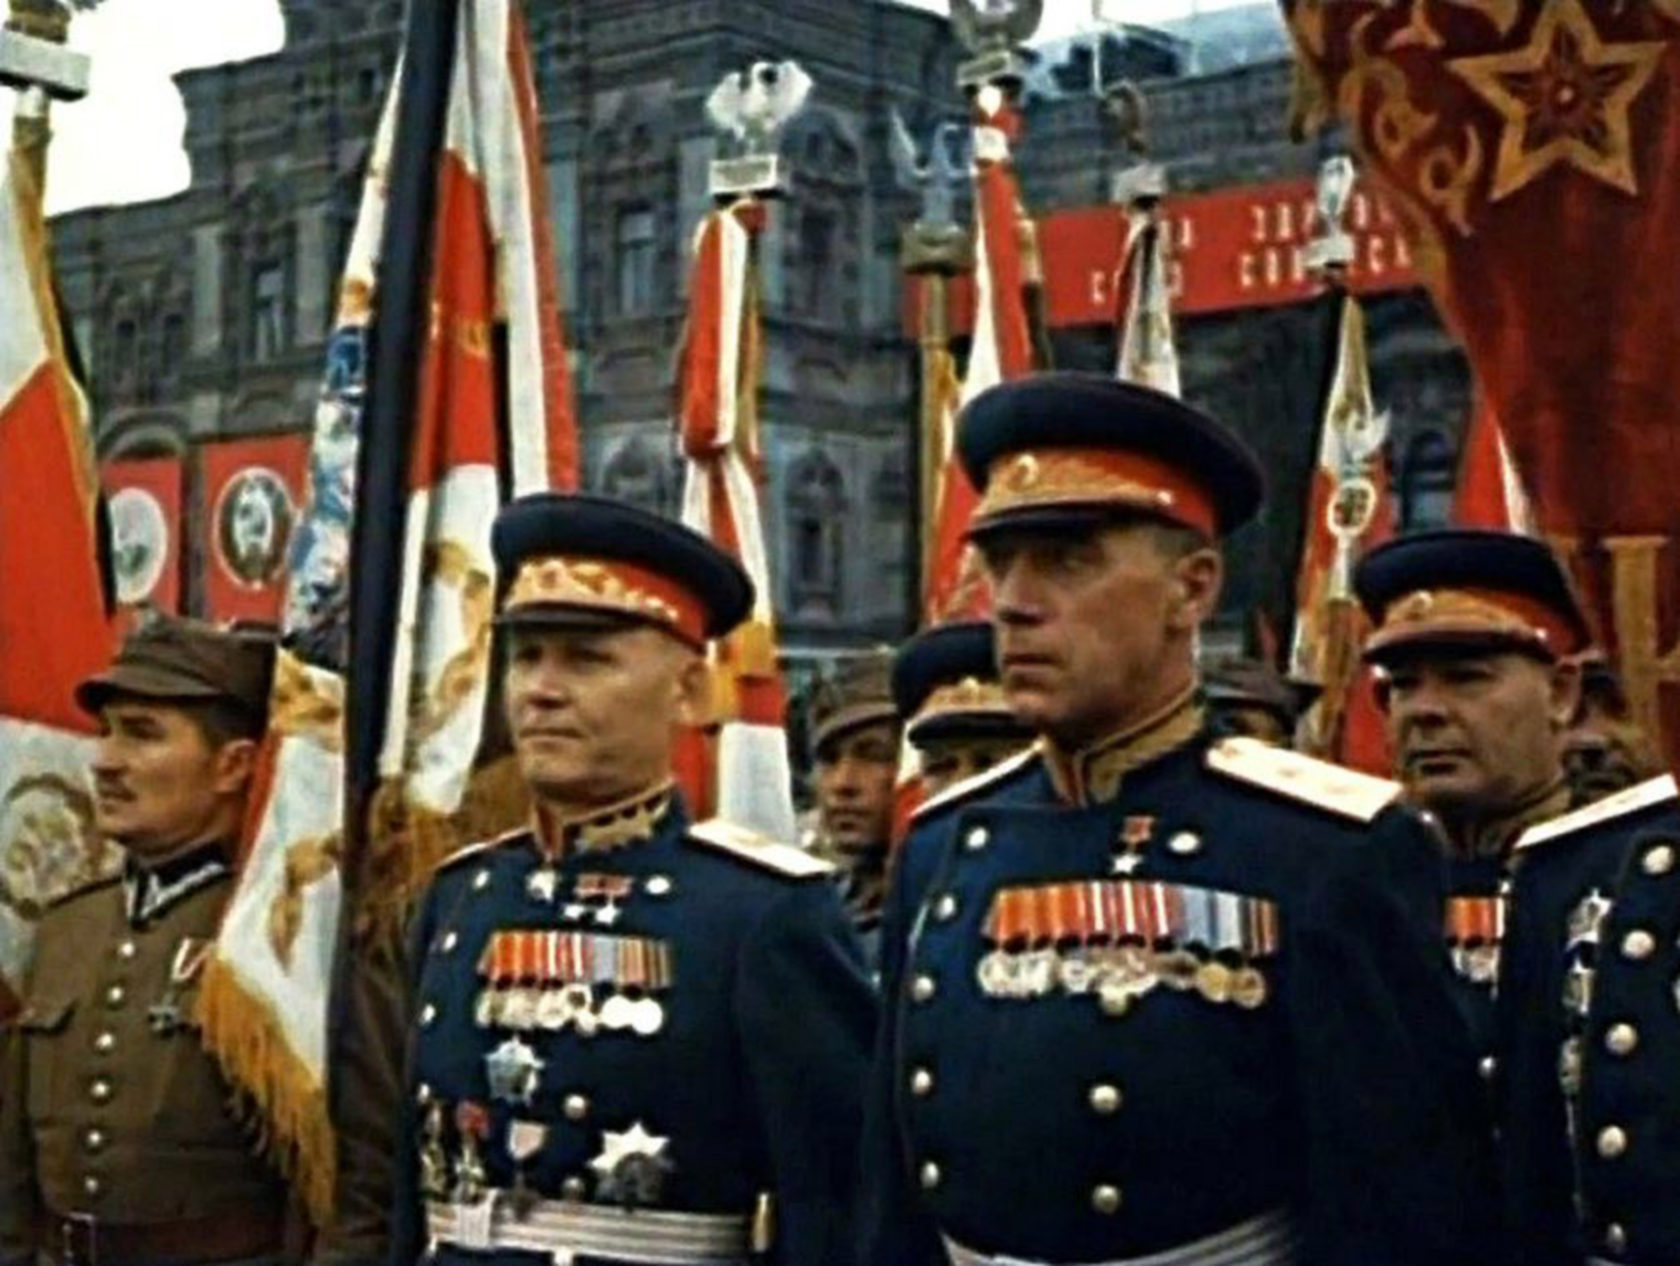 парад на красной площади в 1945 году